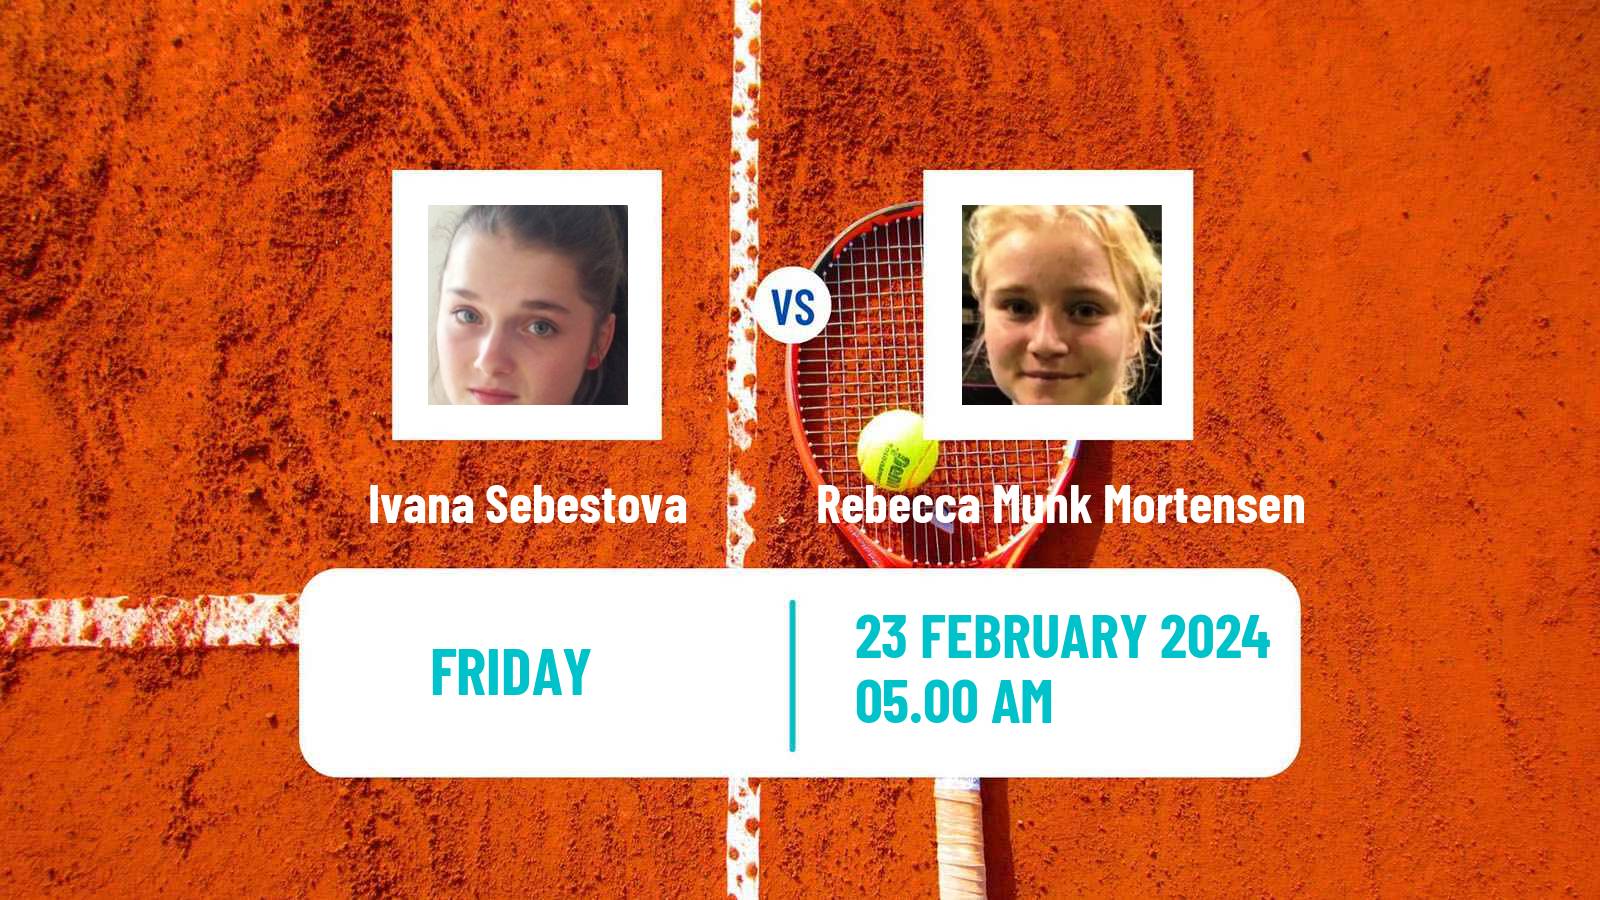 Tennis ITF W15 Manacor 2 Women Ivana Sebestova - Rebecca Munk Mortensen